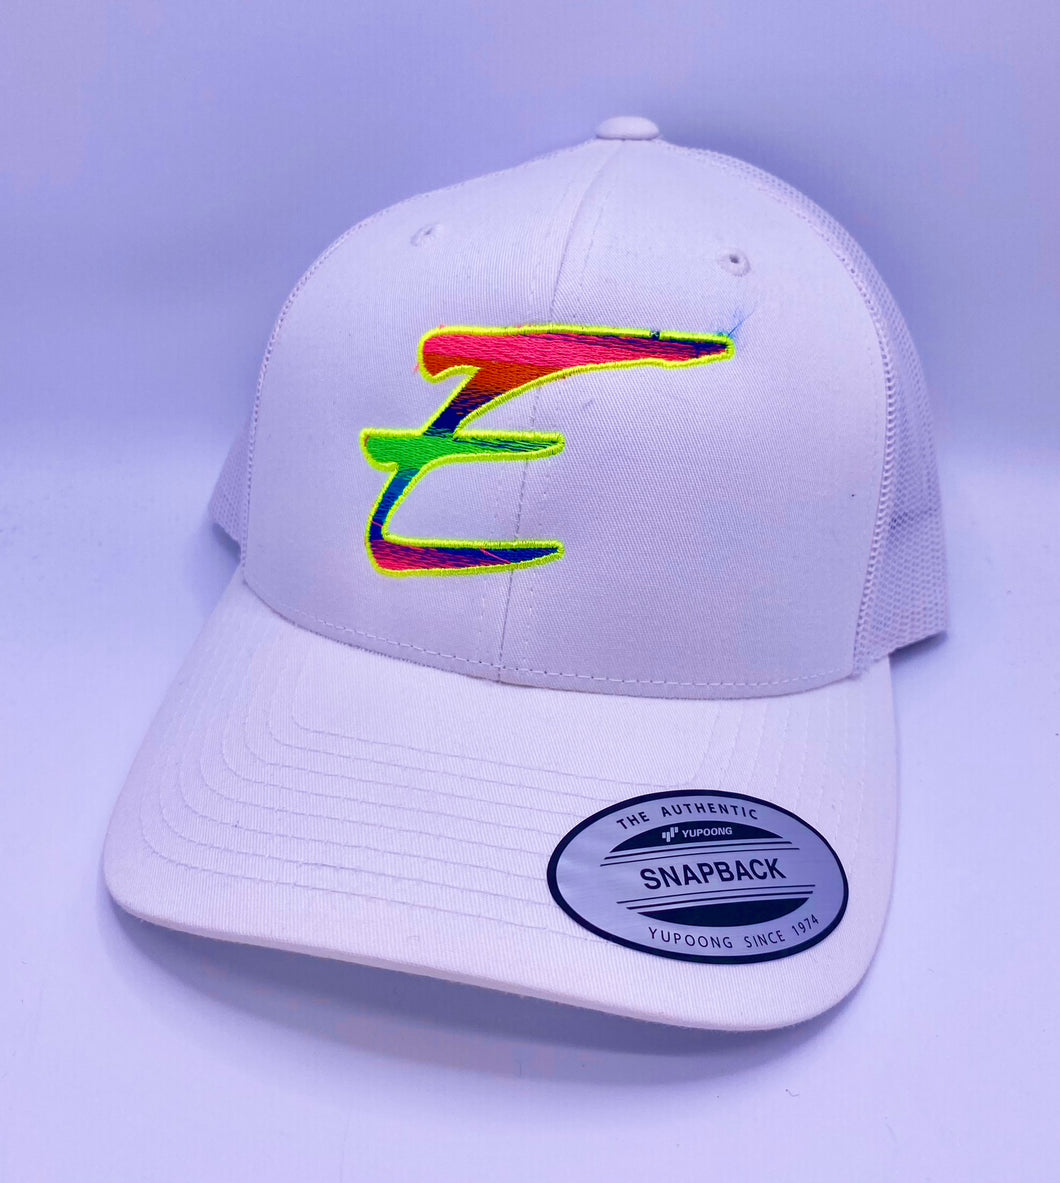 Eden Round Bill Snapback Rainbow Hat White